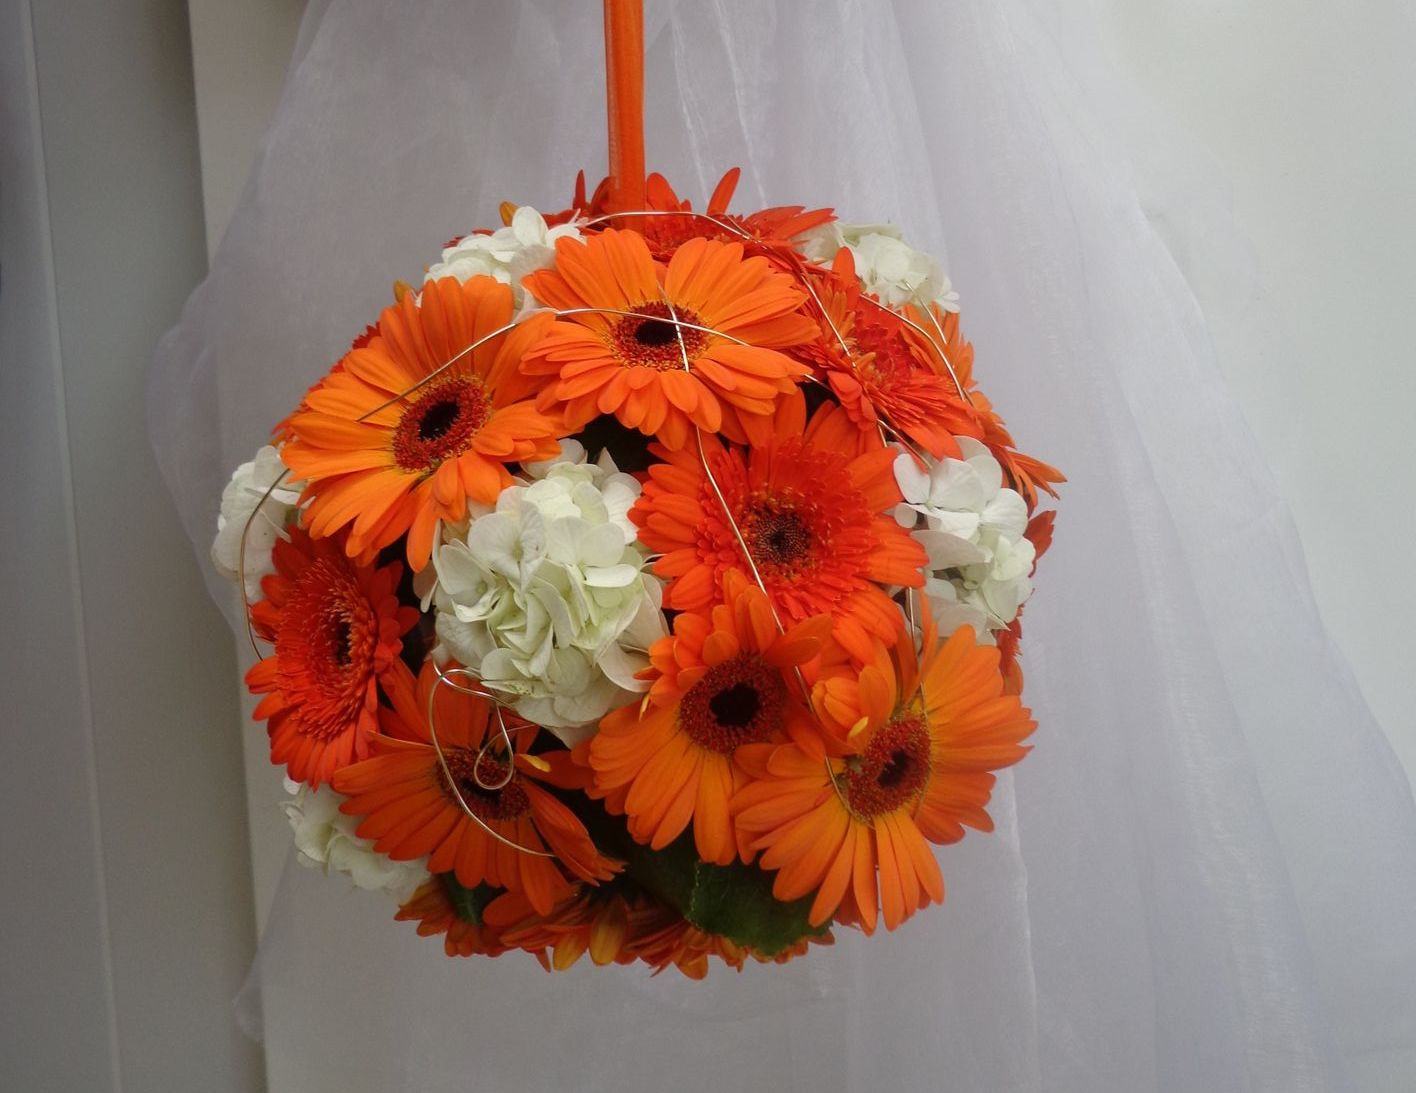 Décoration florale orange et blanc en rond